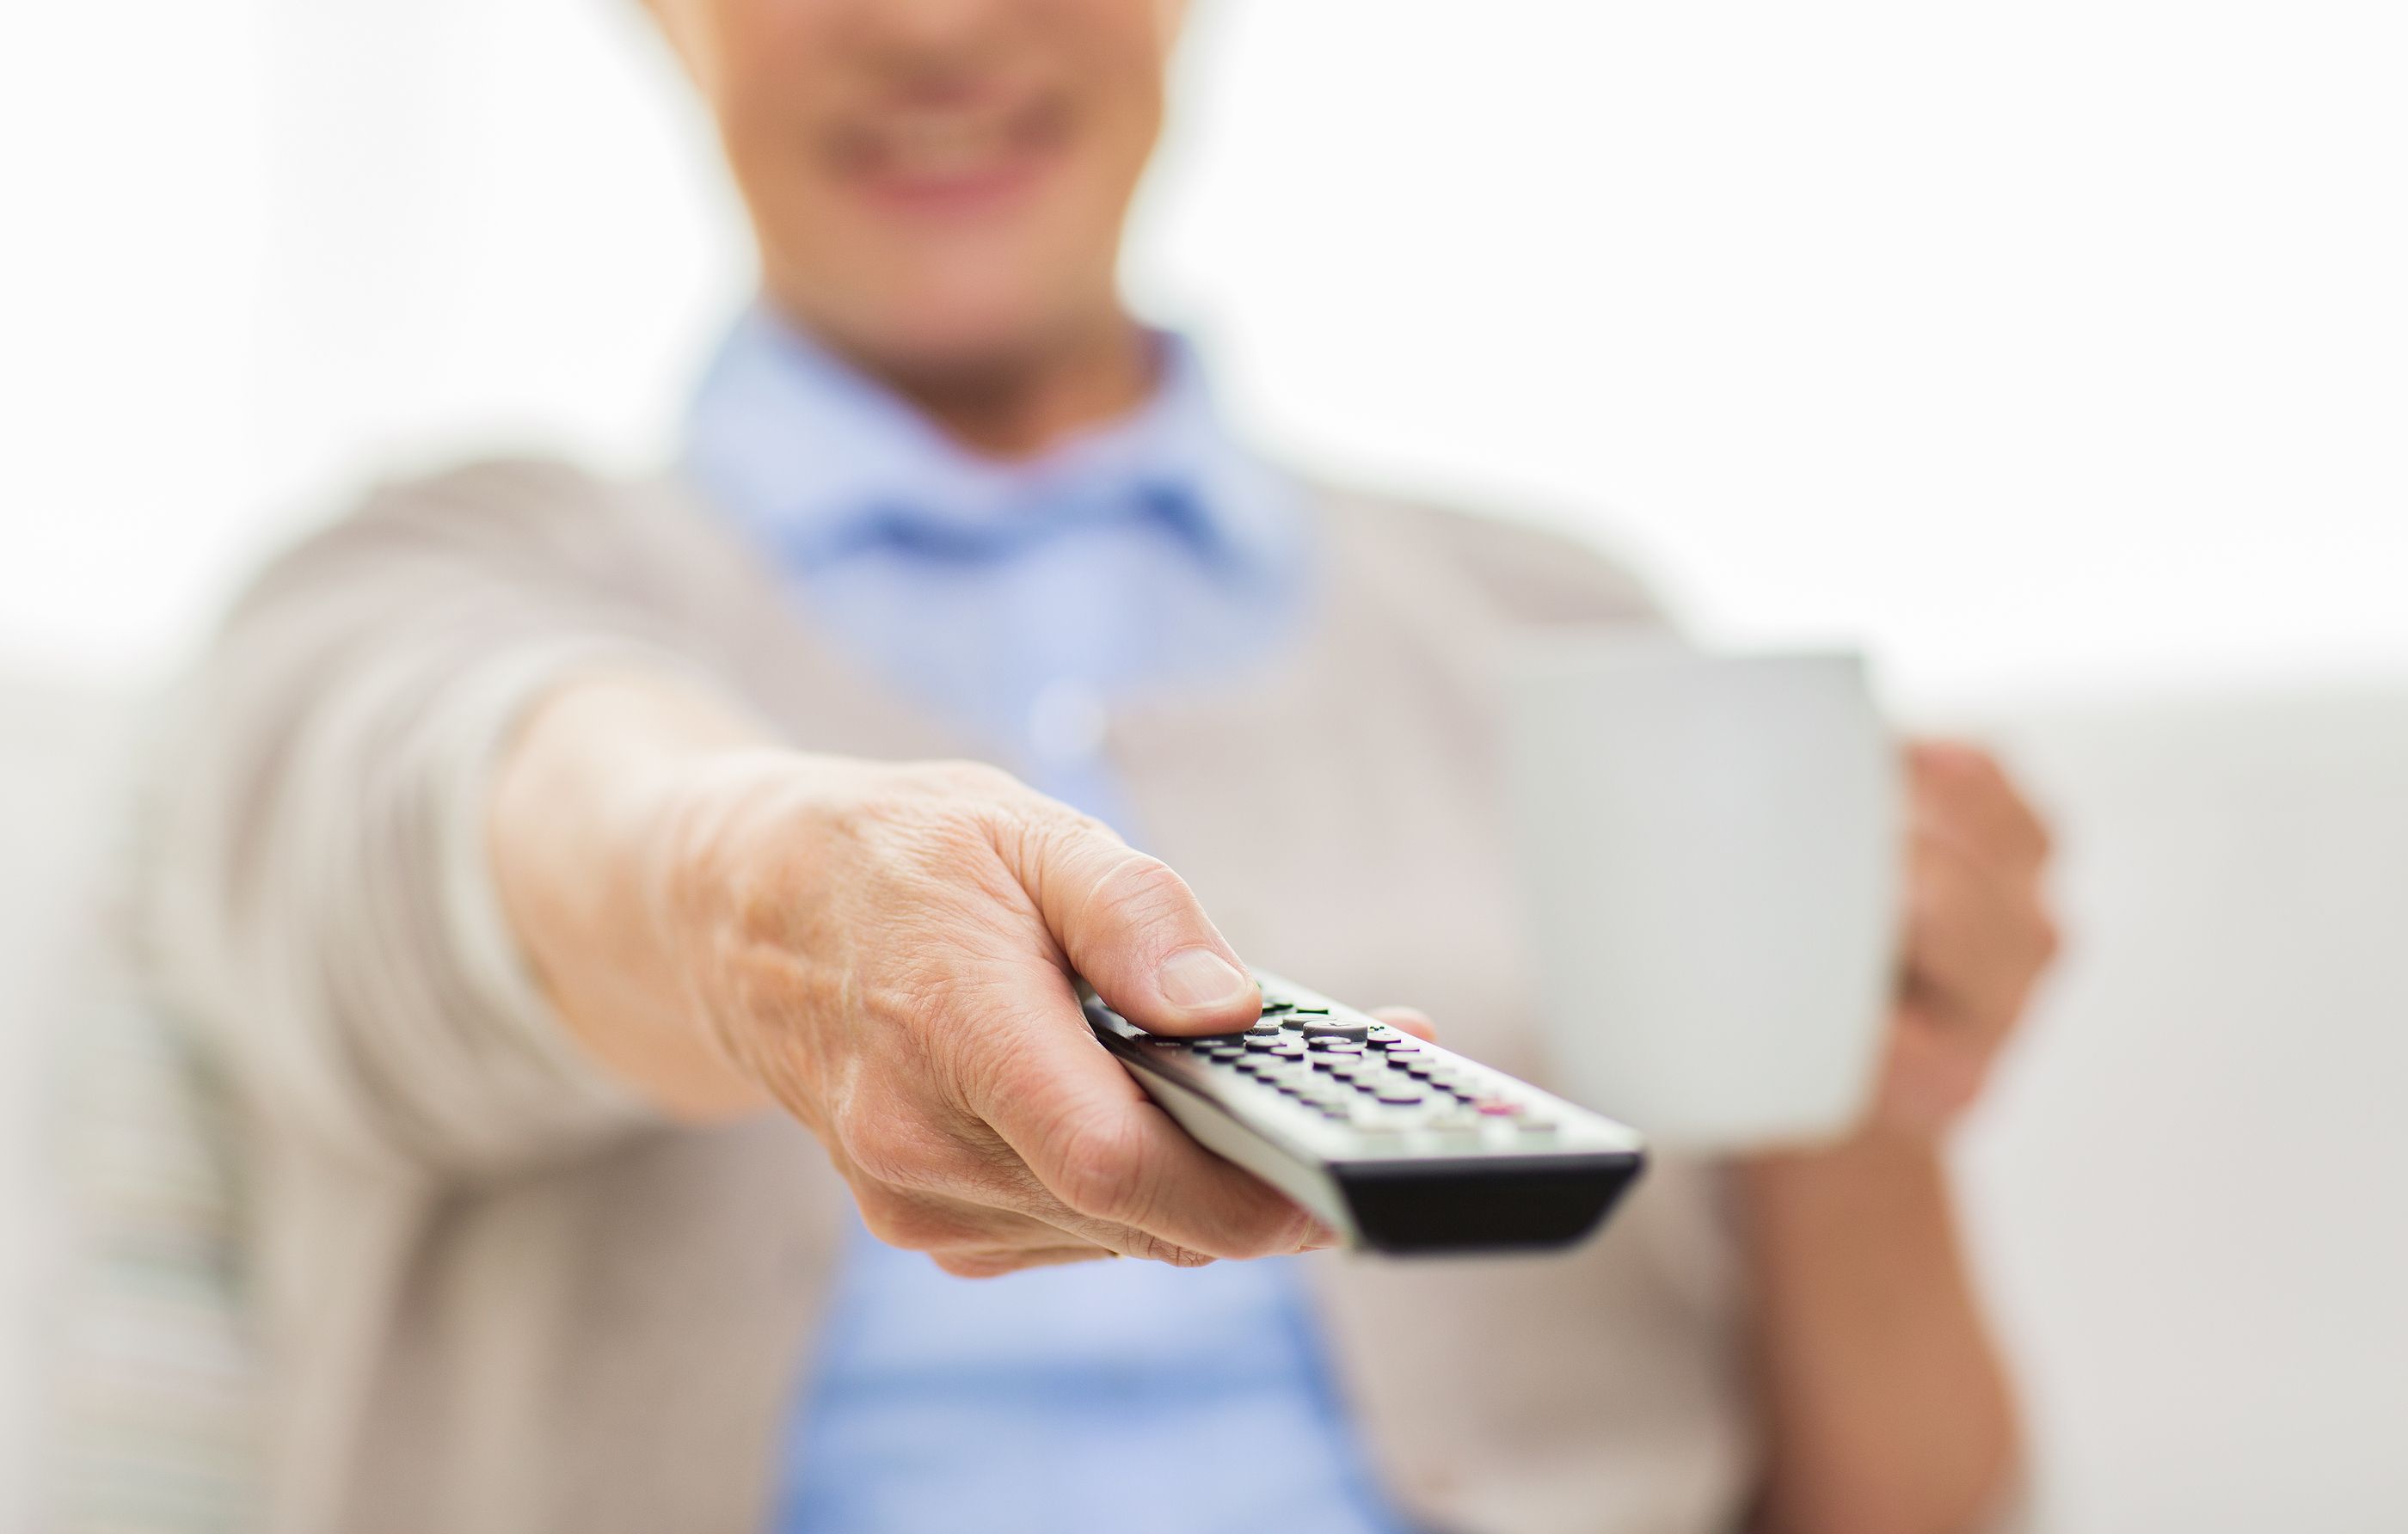 Los mayores de 64 años ven la televisión cerca de 6 horas al día